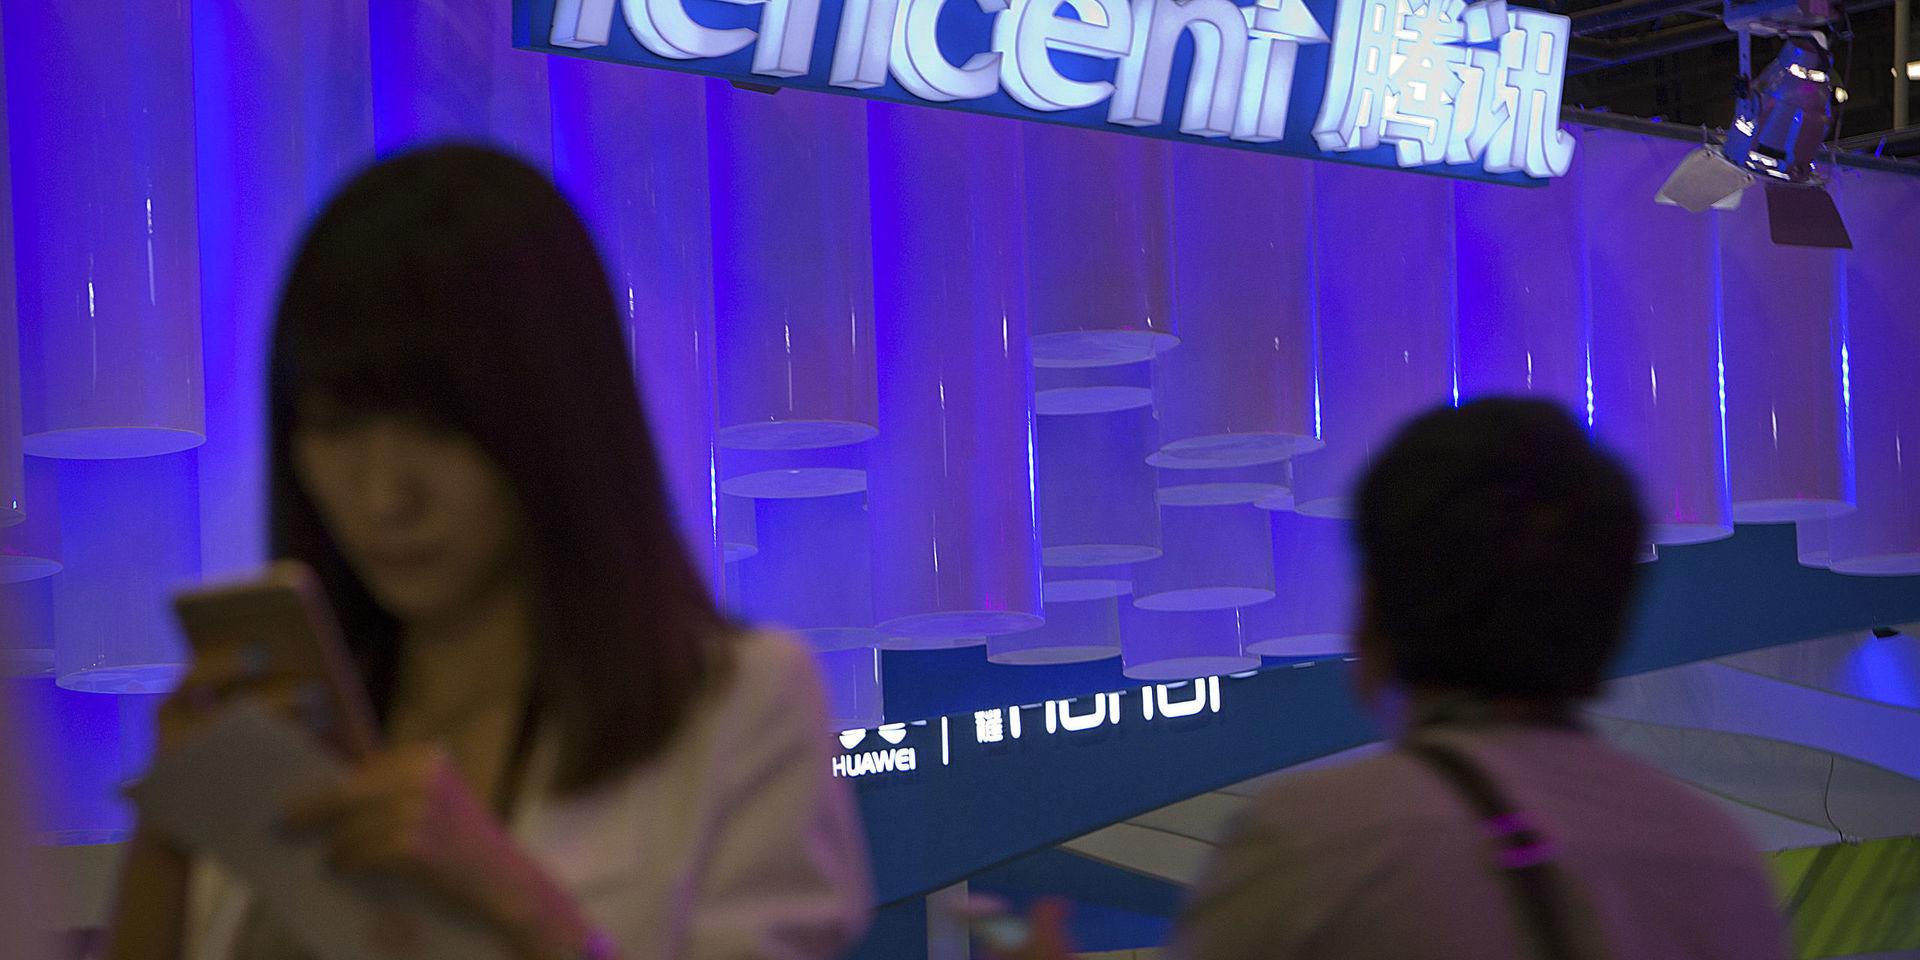 Tencent ska öka investeringar i smart detaljhandel utanför Kina, enligt vd Martin Lau. Arkivbild.